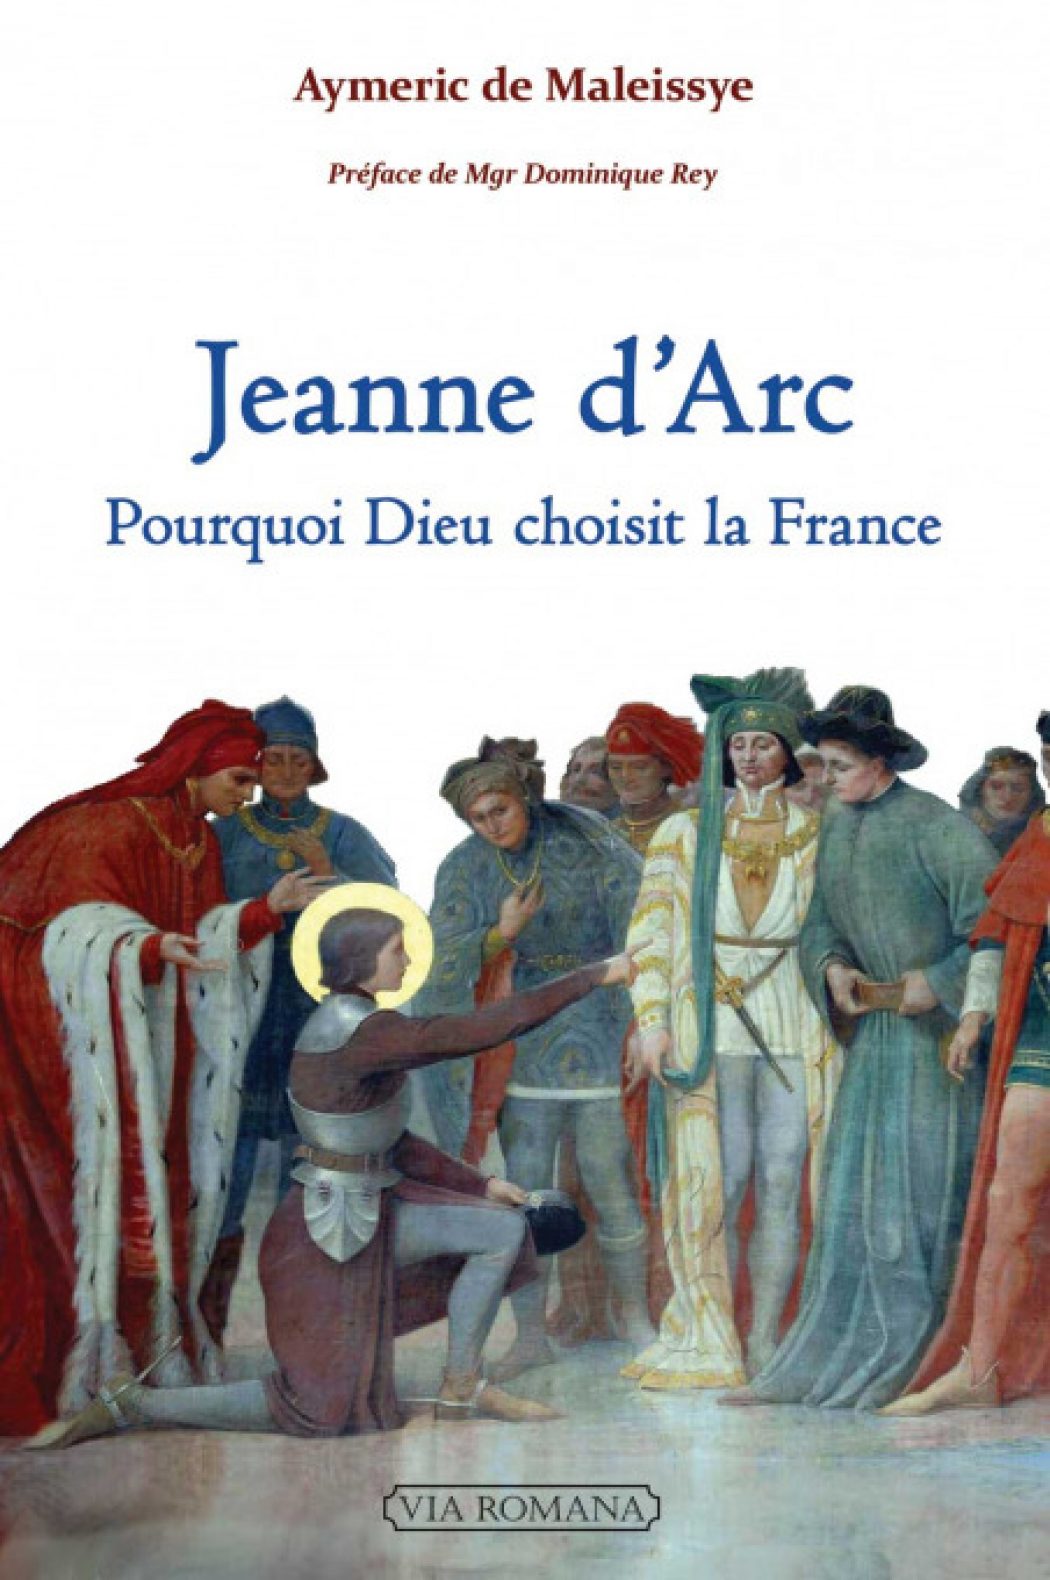 Sainte Jeanne d’Arc, apôtre de la royauté du Christ